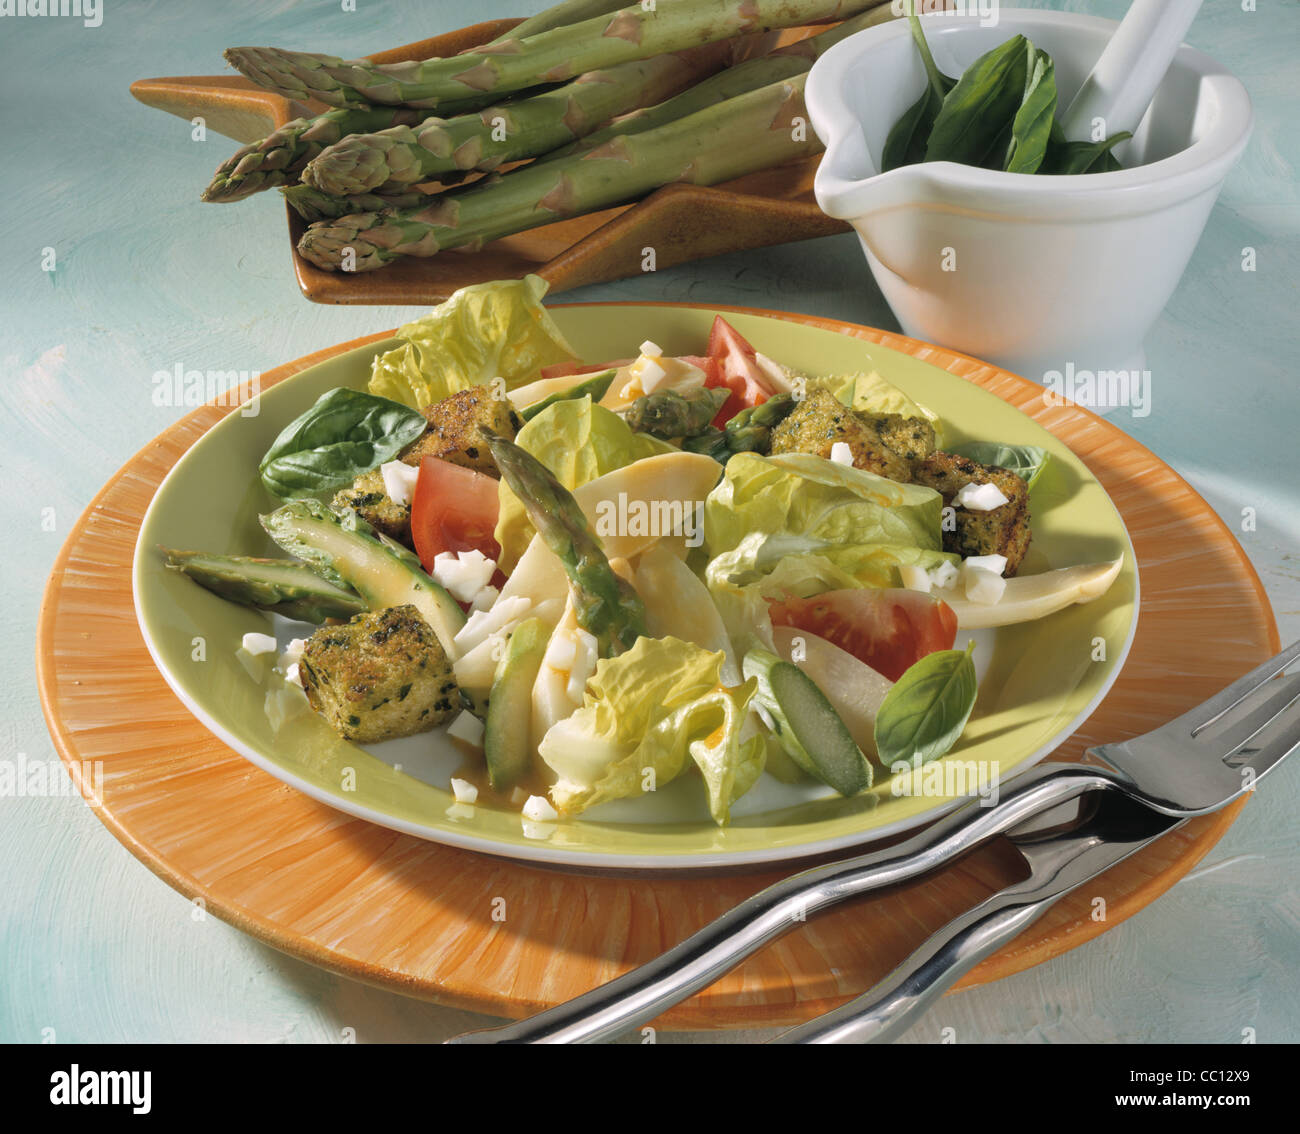 Asparagus salad with pesto - croûtons Stock Photo